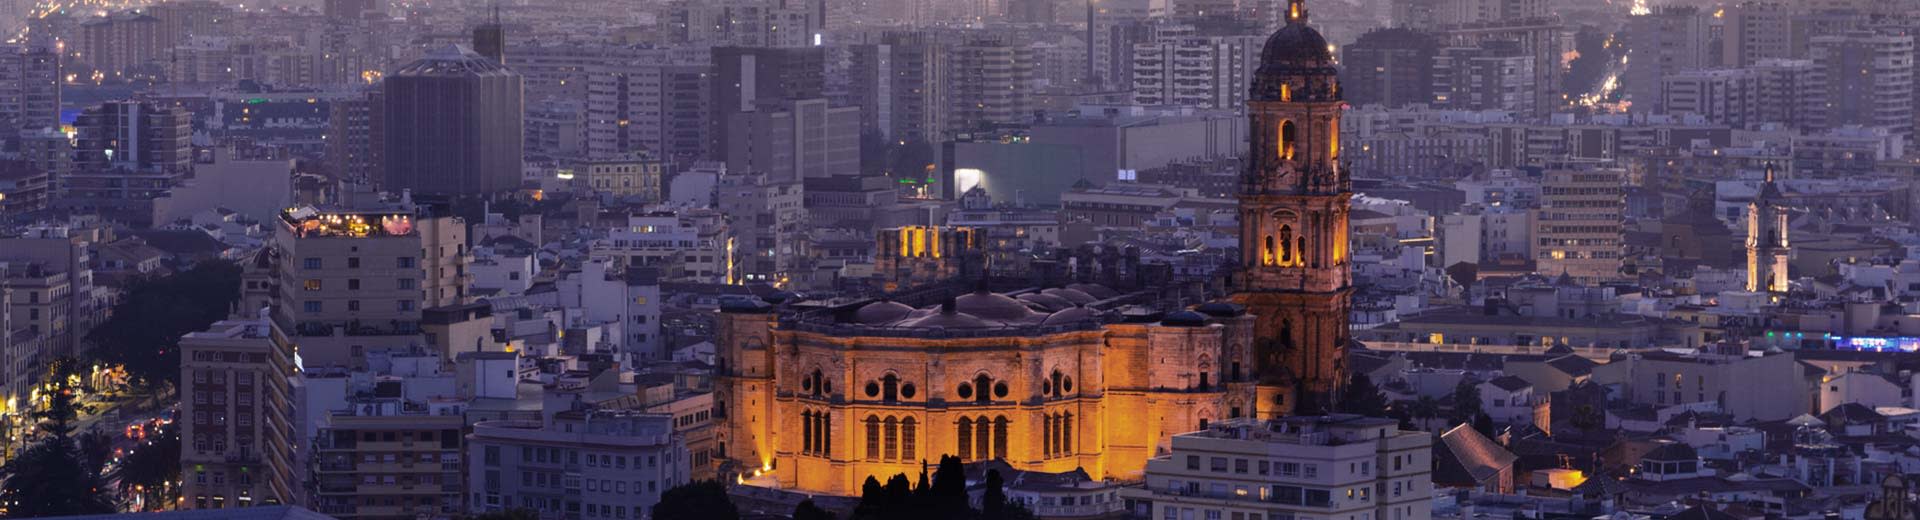 Le magnifique centre-ville historique de Malaga dans la demi-lumière du crépuscule.